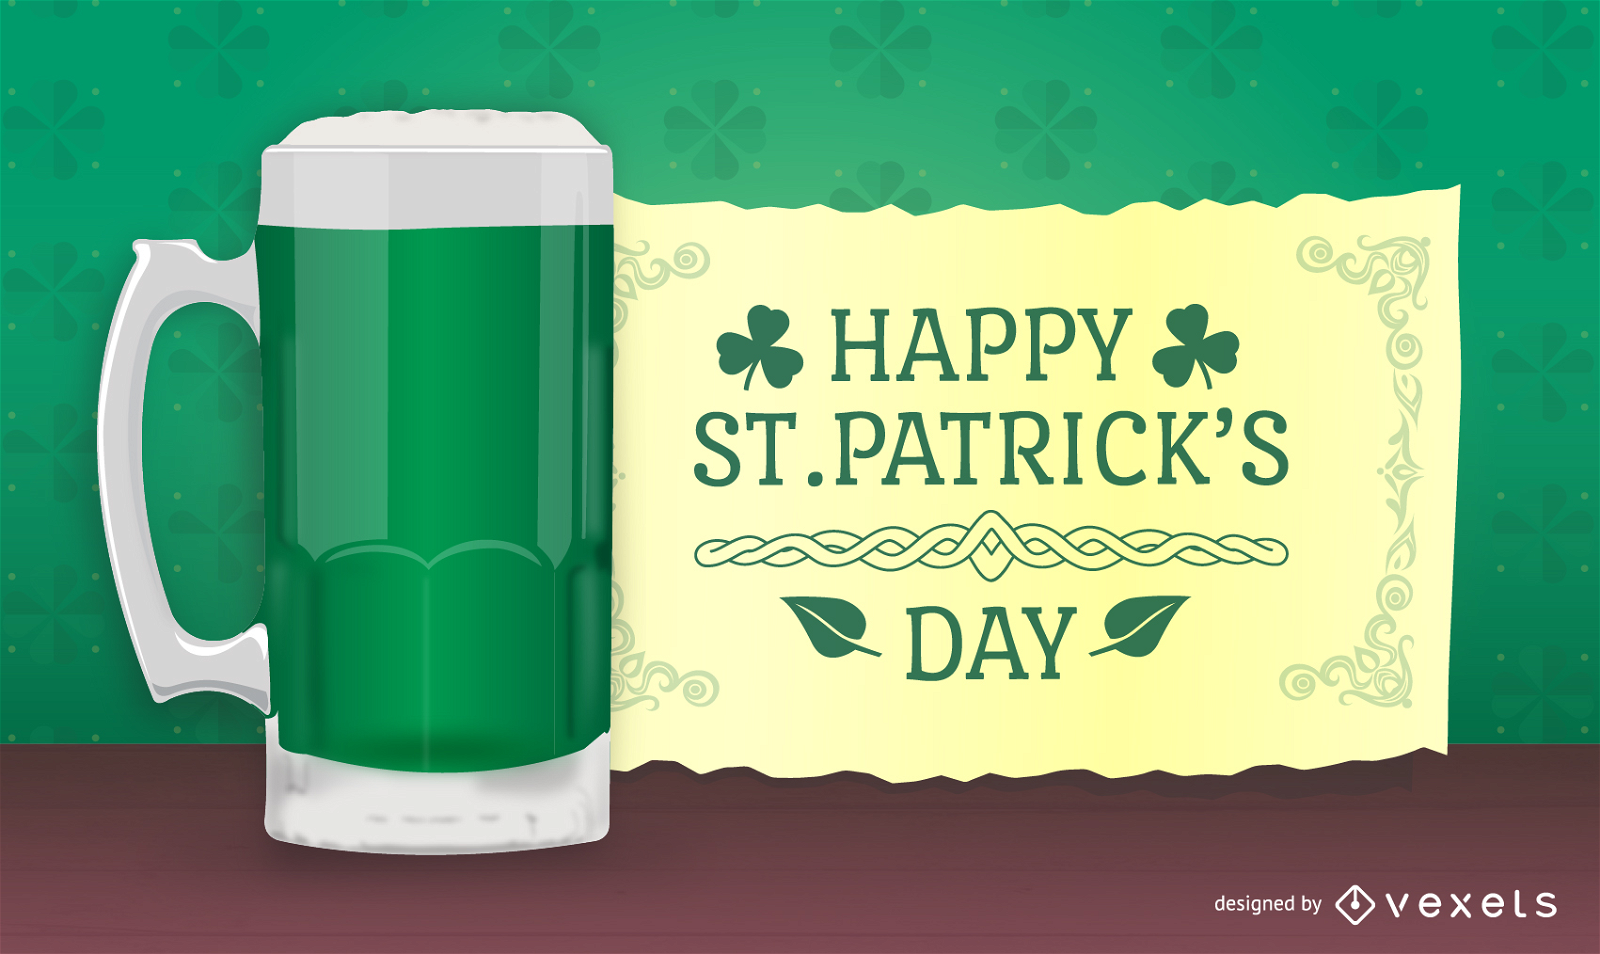 Dise?o de St. Patricks con cerveza en 3D y mensaje.